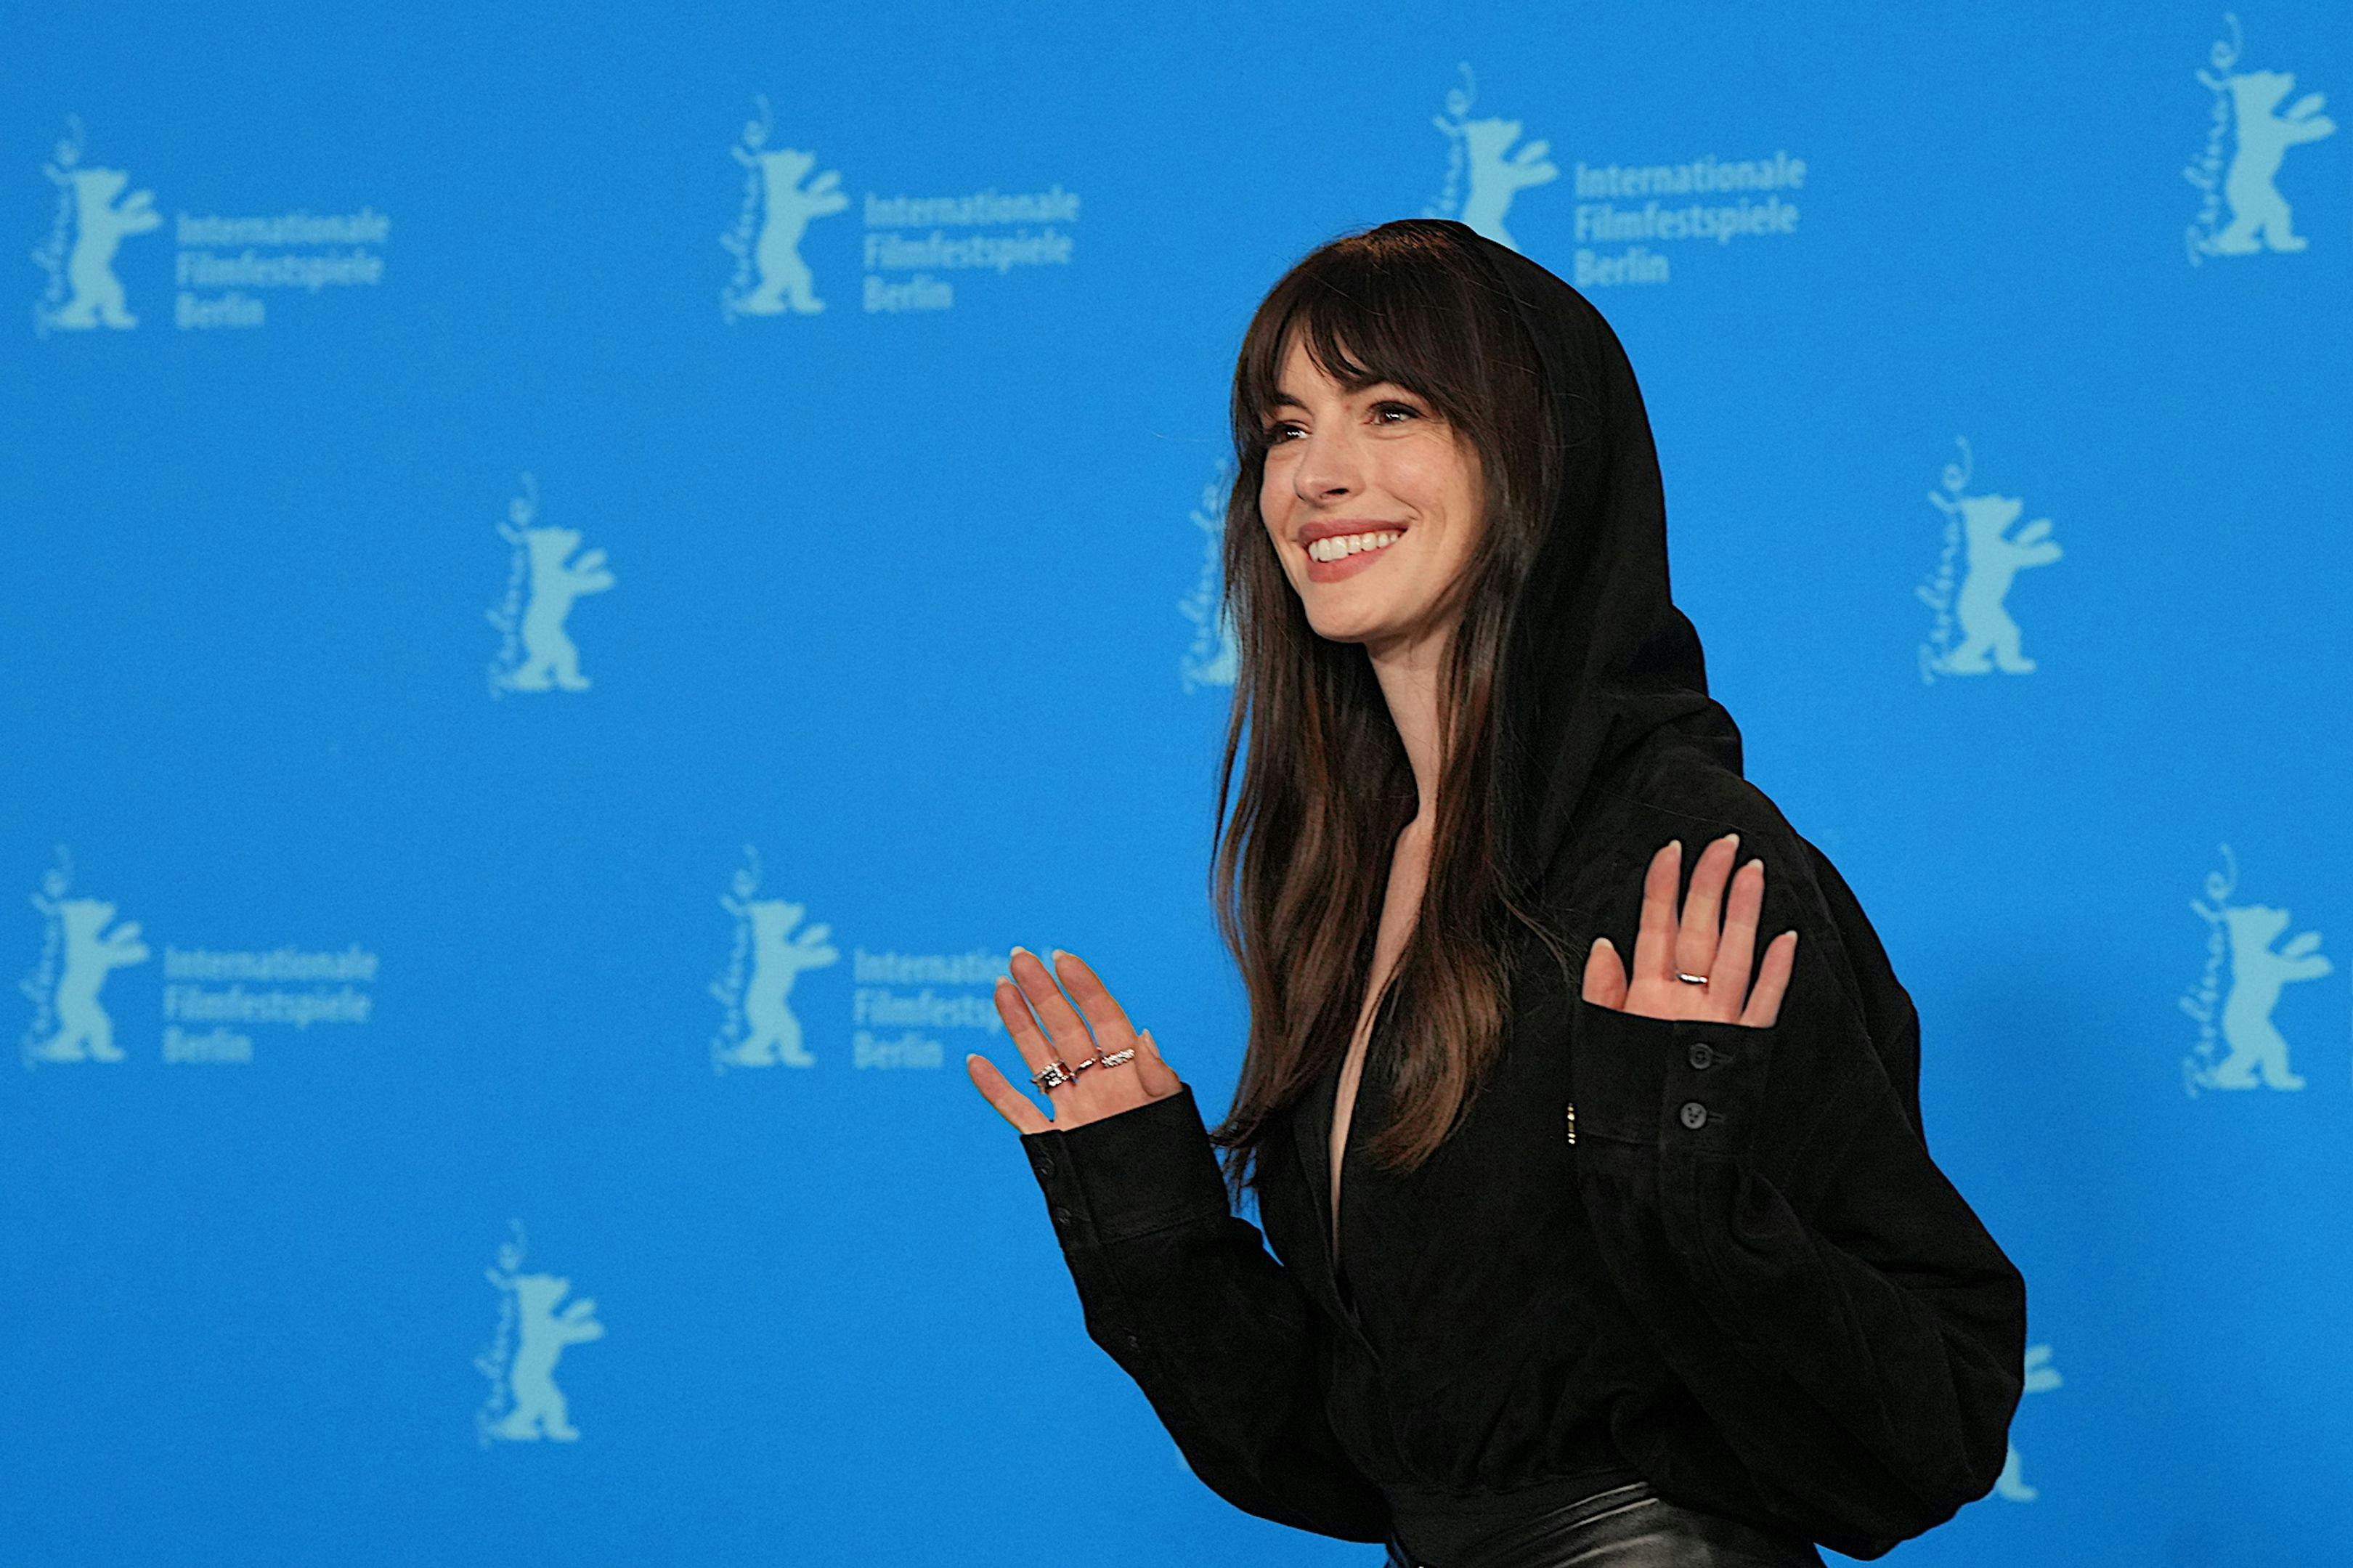 La actriz Anne Hathaway saluda a los fotógrafos durante el photocall de la película 'She came to me' en la Berlinale